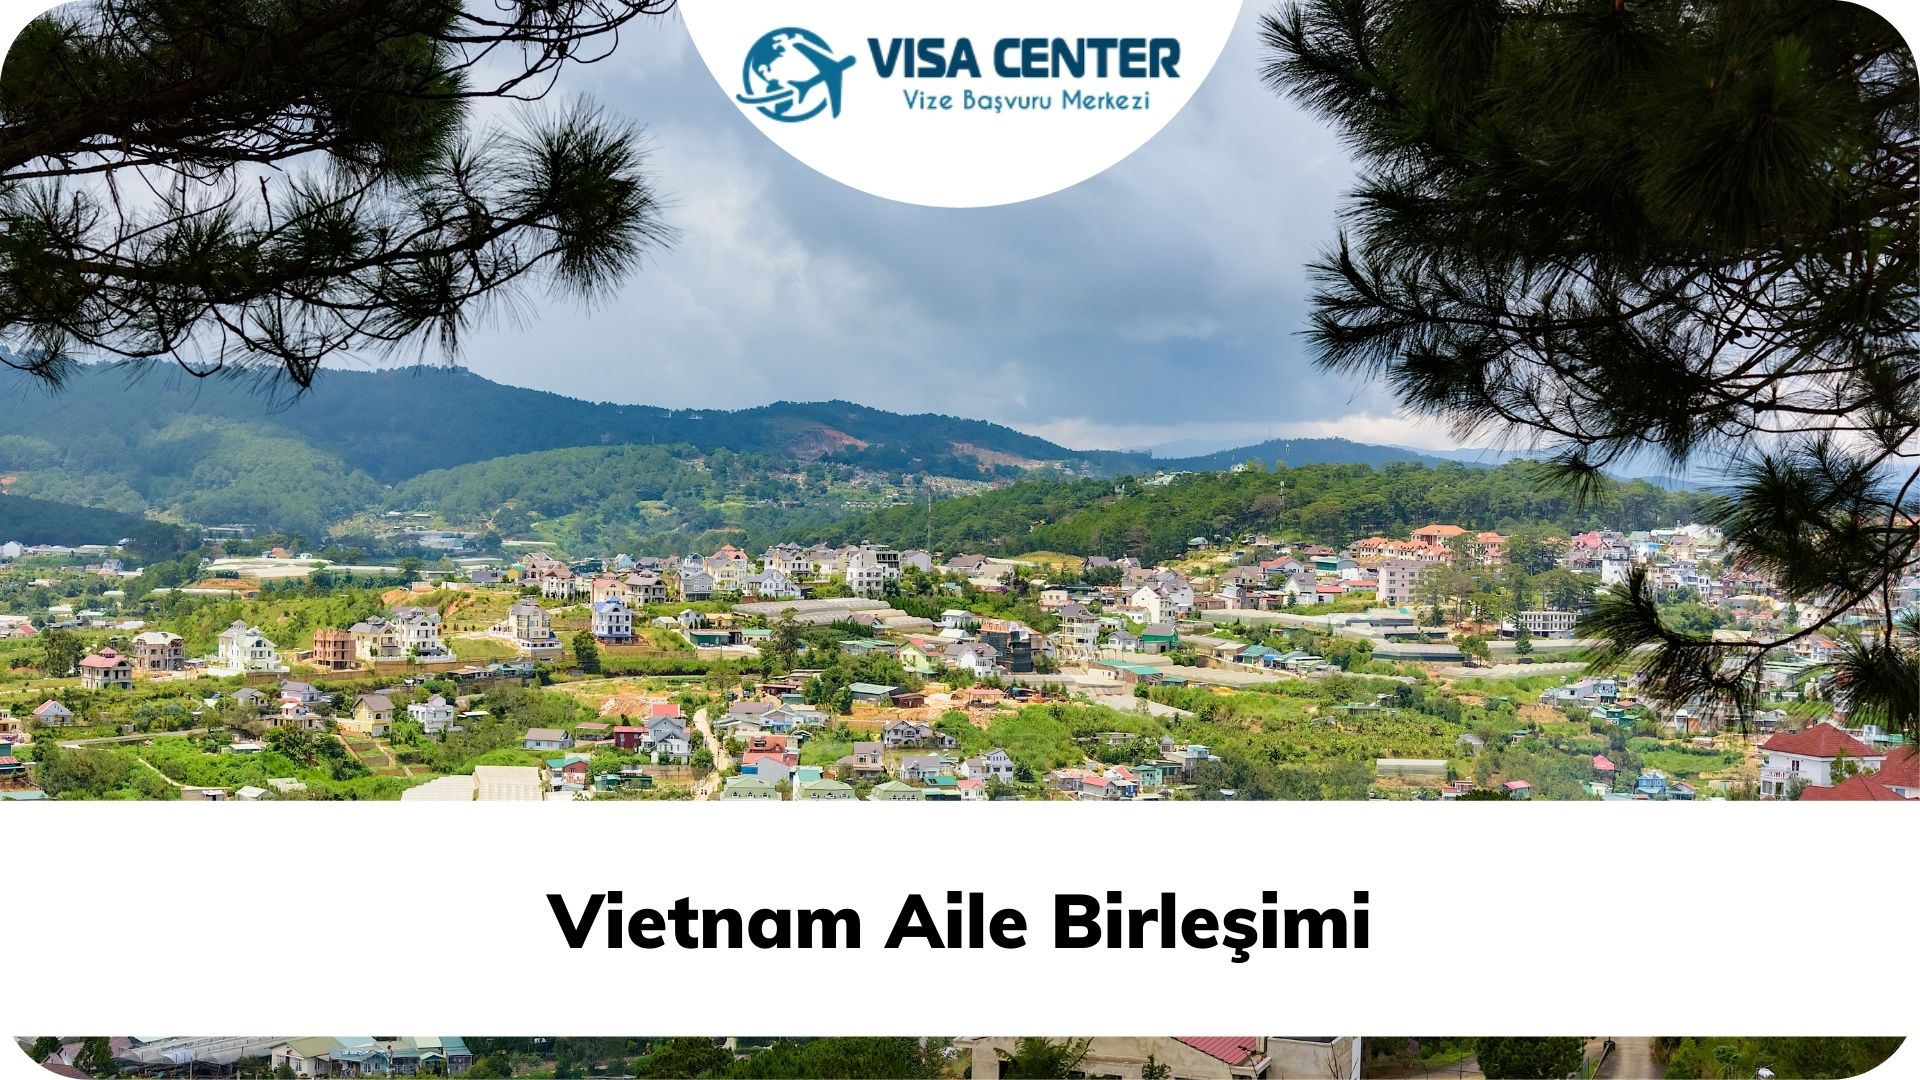 Vietnam Aile Birleşimi